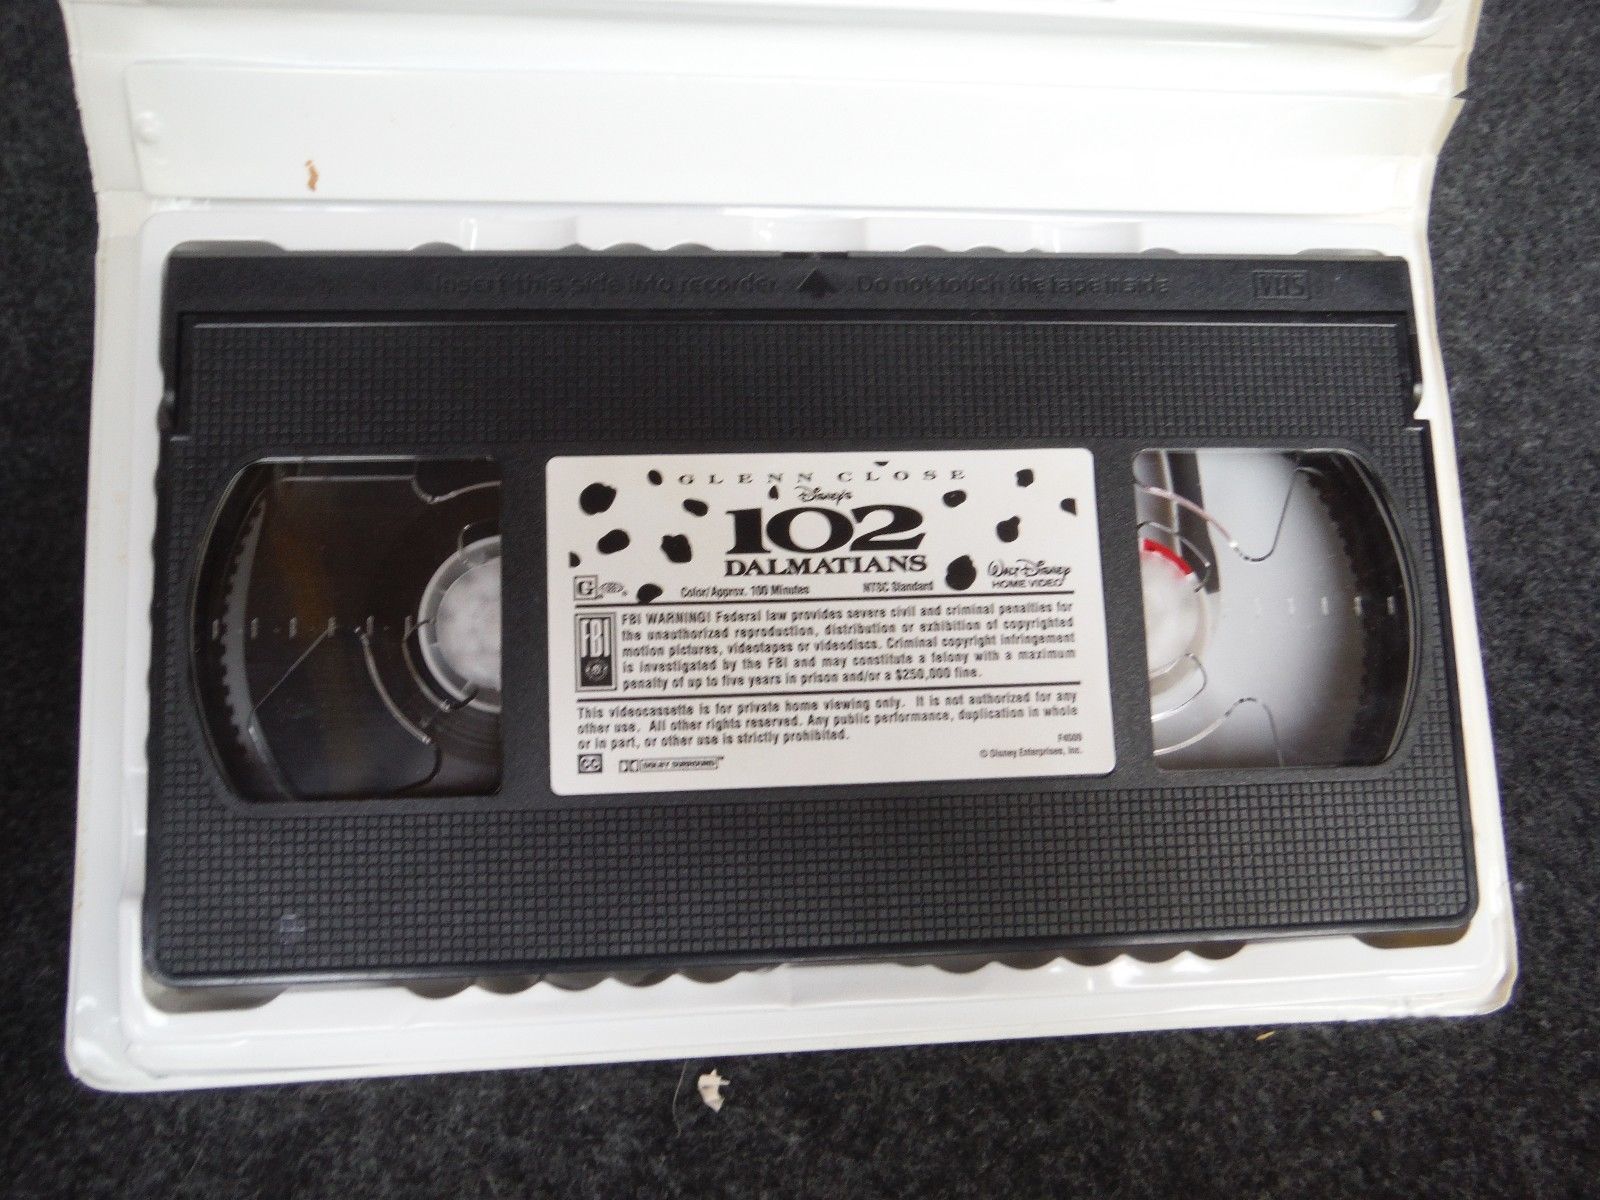 Walt Disney 102 Dalmatians (VHS, 2001) - VHS Tapes